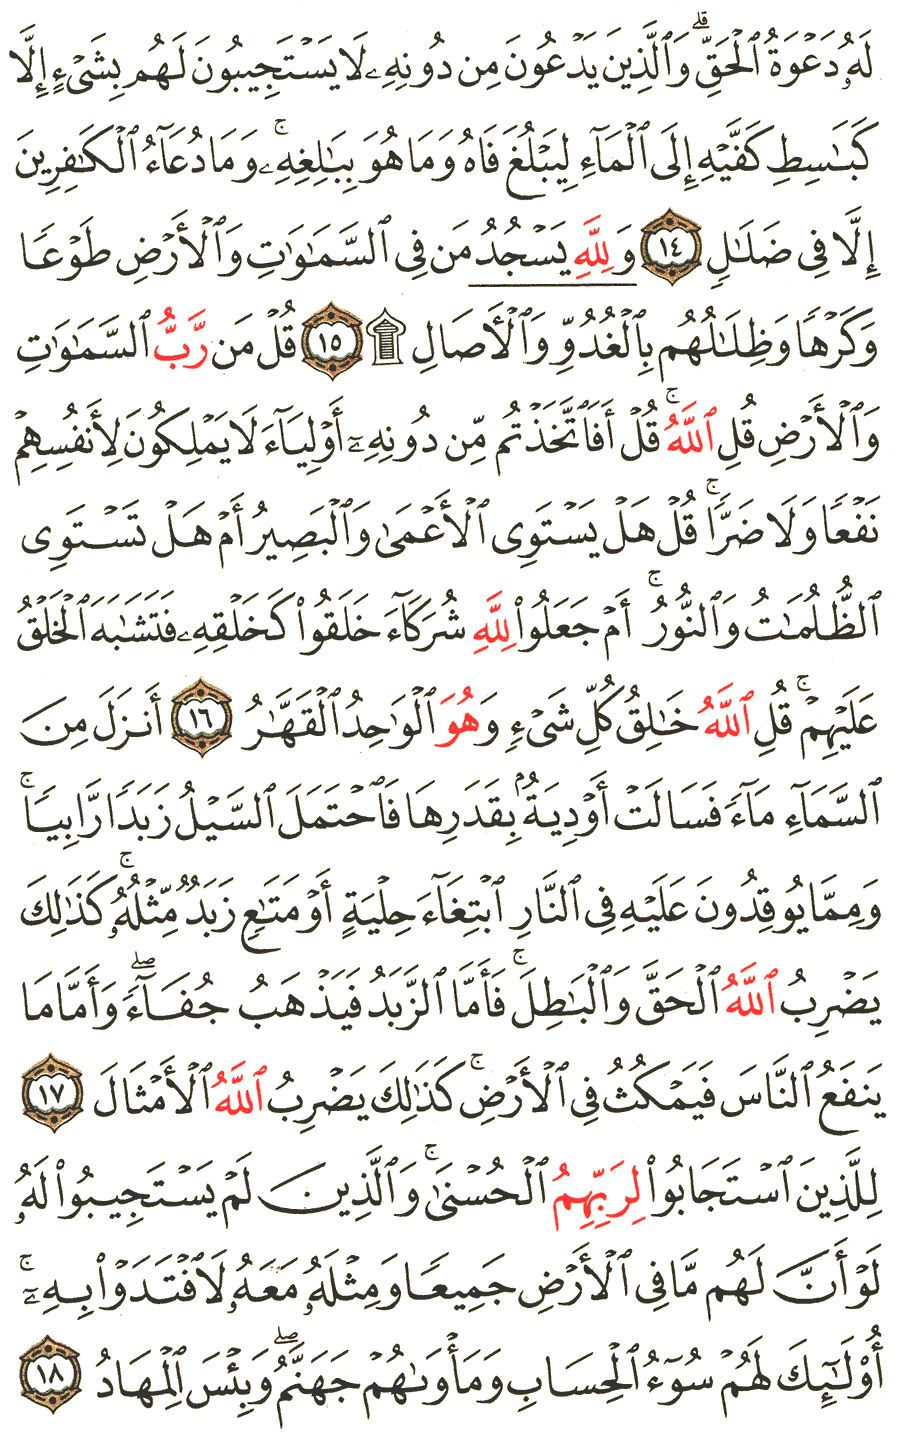 الصفحة 251 من القرآن الكريم